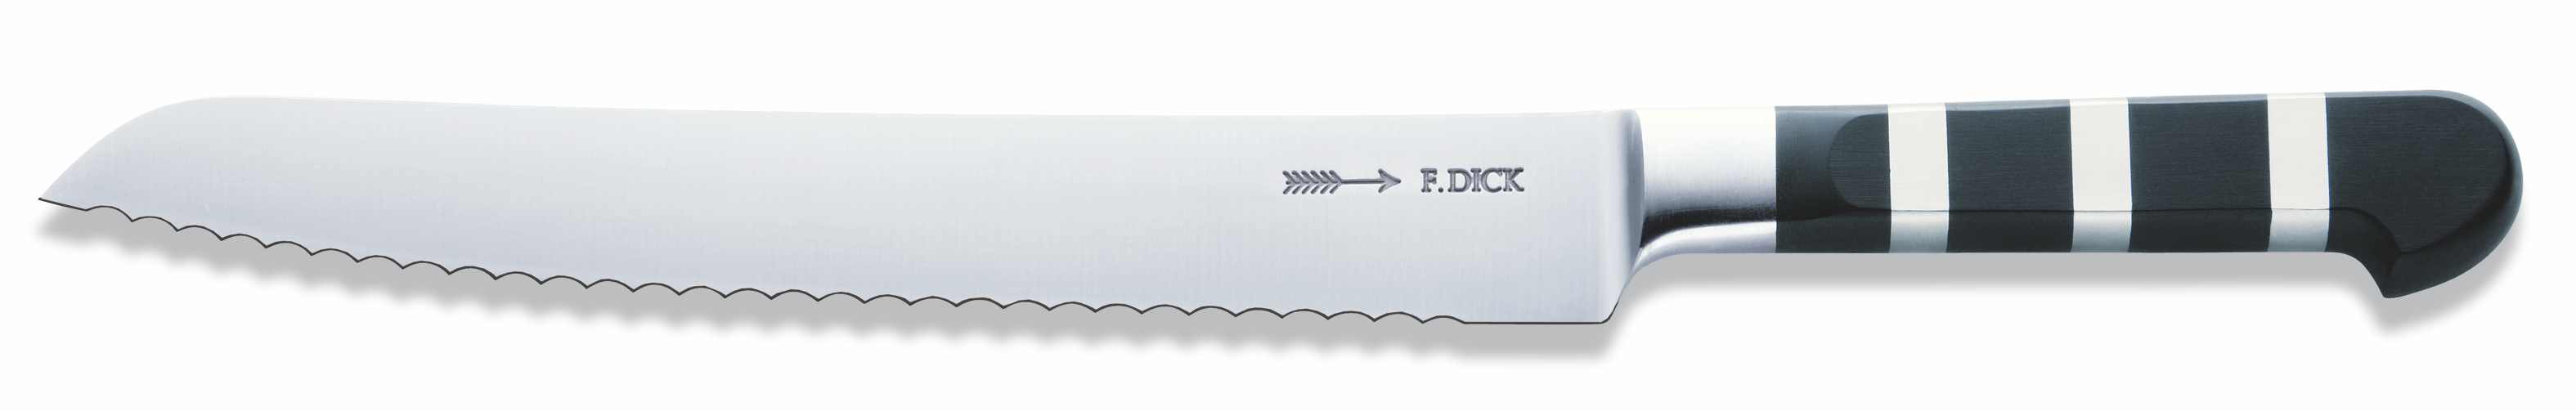 Nůž na chléb s vlnitým výbrusem ze série 1905 v délce 21 cm